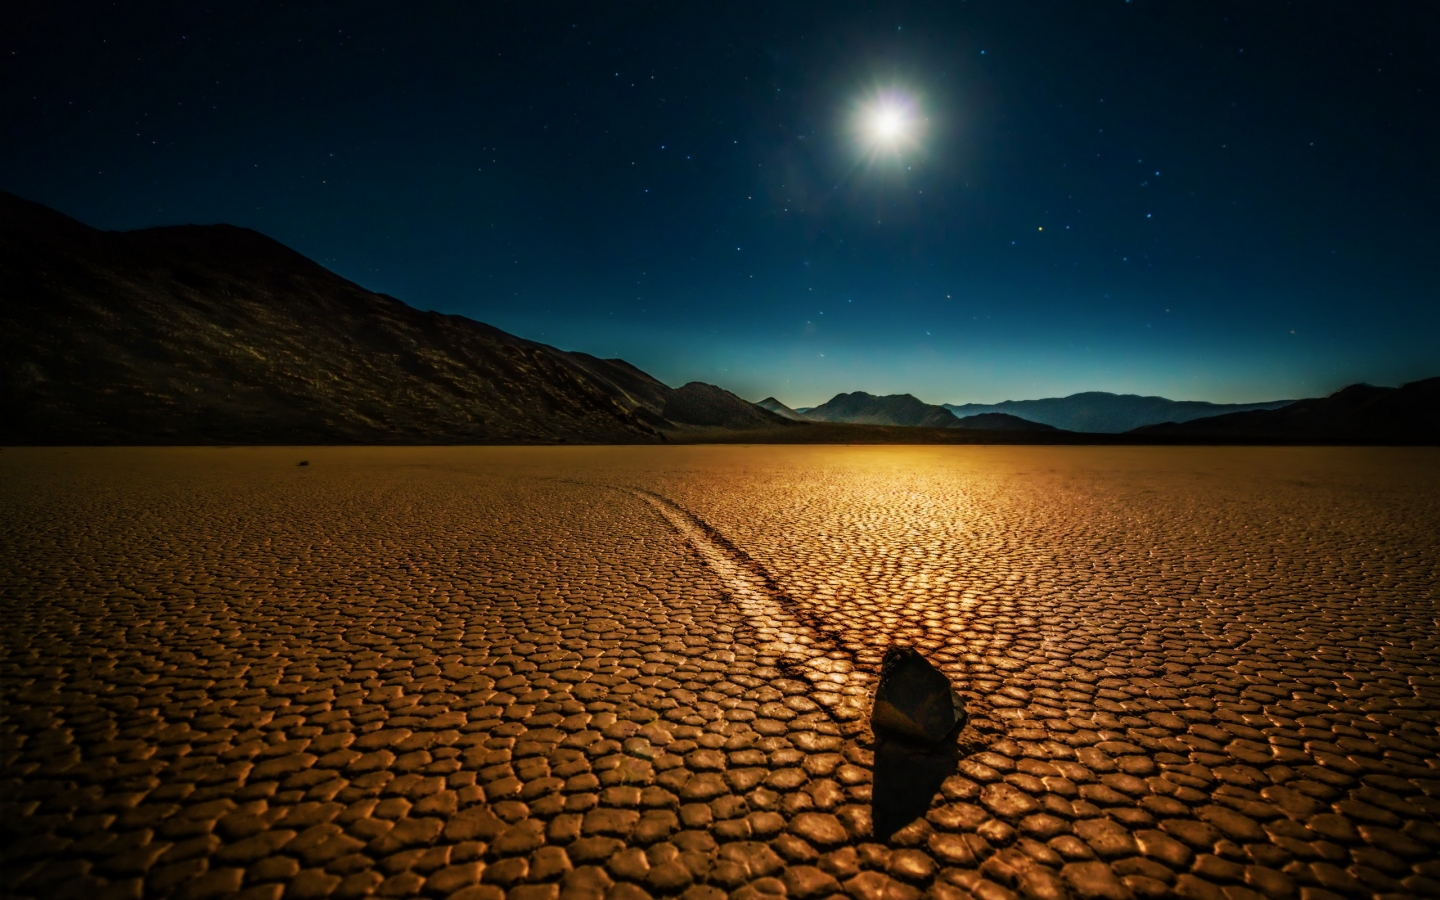 Desert Night Landscape for 1440 x 900 widescreen resolution